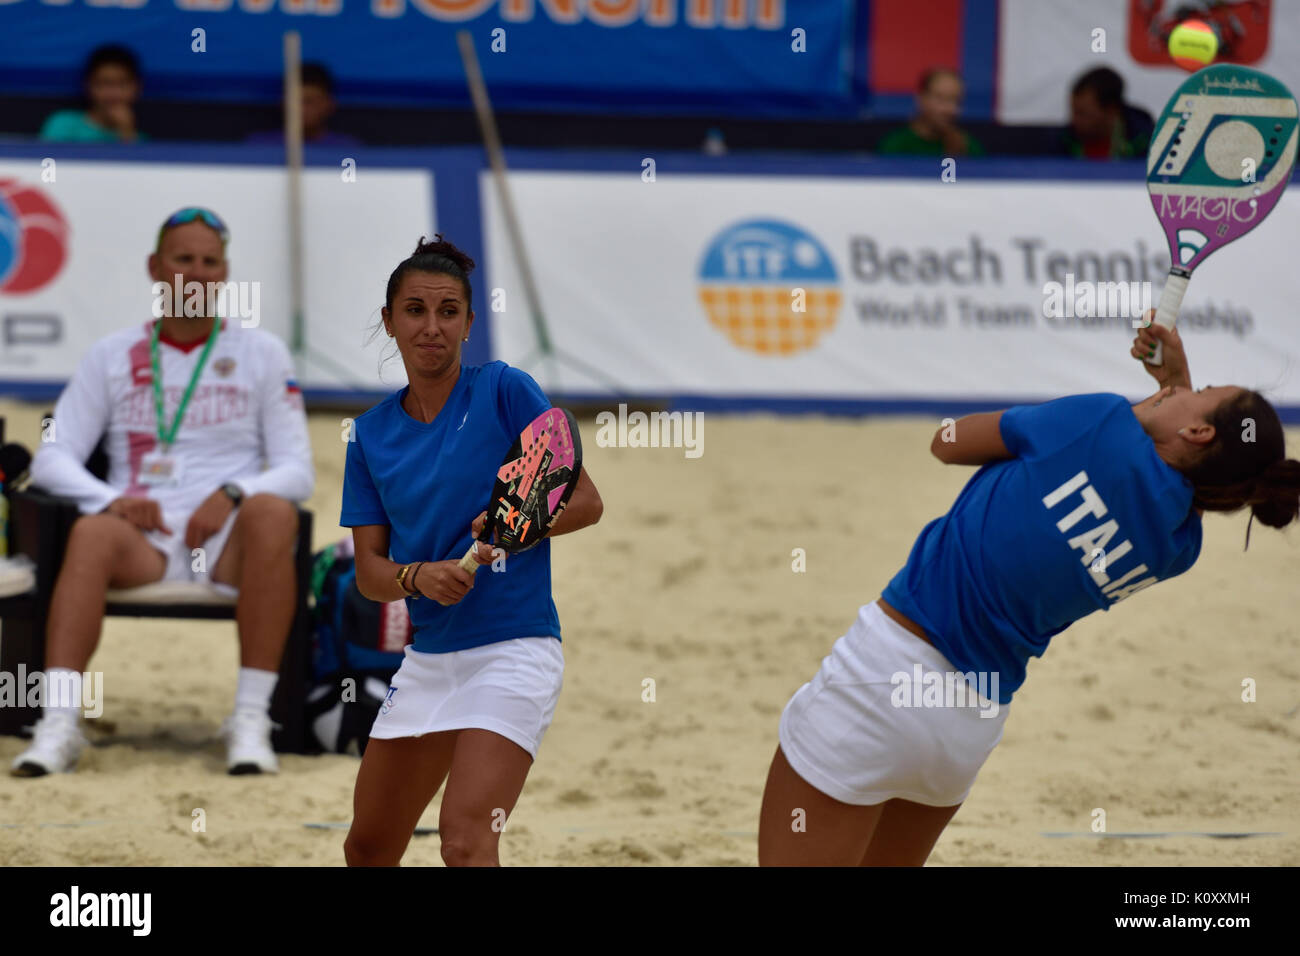 Moscou, Russie - le 19 juillet 2015 : Sofia Cimatti (à gauche) et de l'Italie à Federica Bacchetta le match final de la plage Tennis World Team Championship ag Banque D'Images